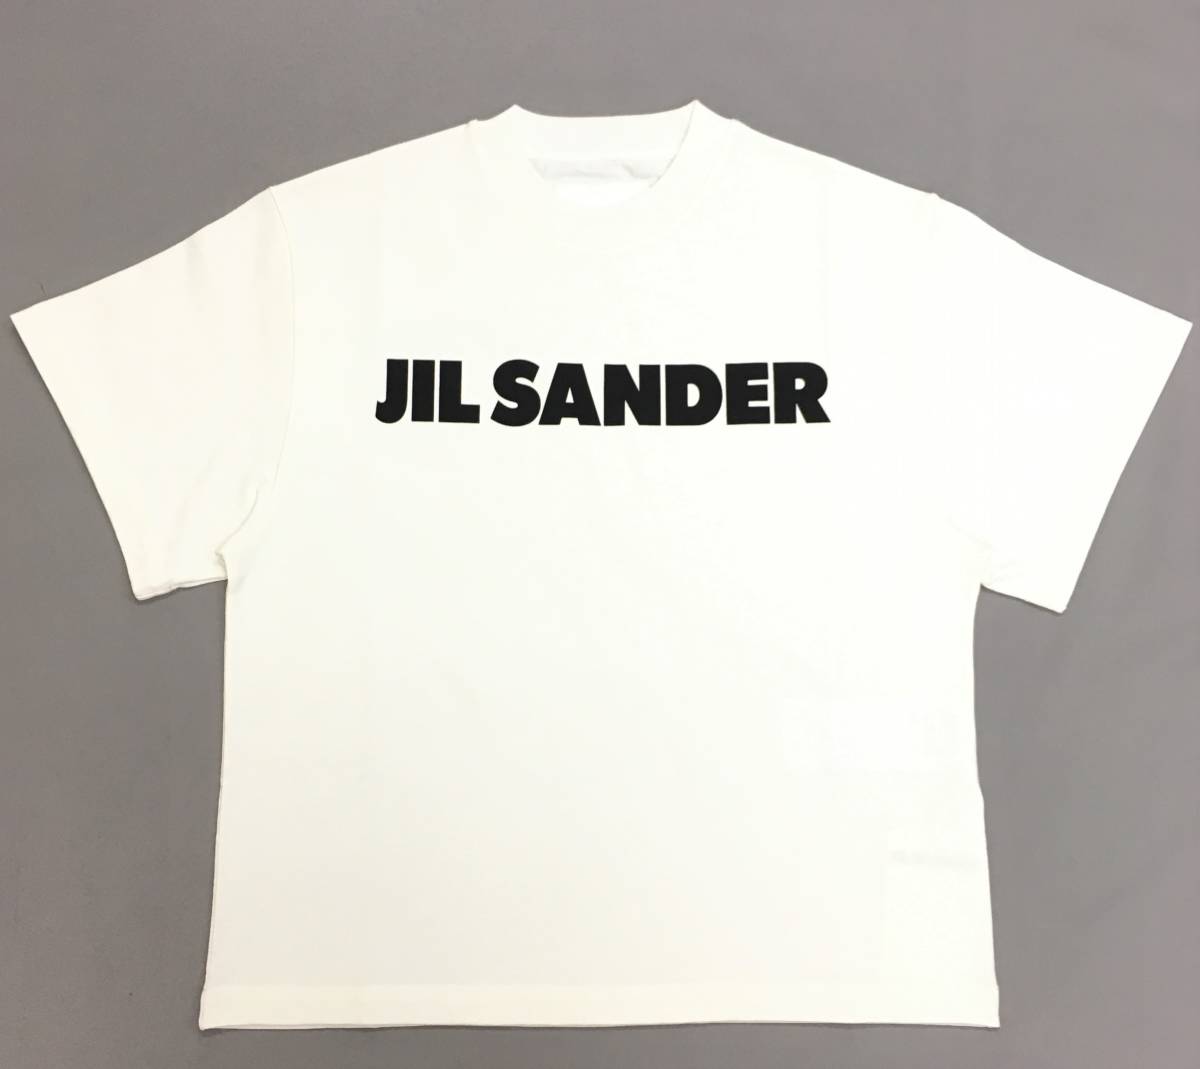 新品 【受賞店舗】 73%OFF サイズM JIL SANDER ロゴ オーバーサイズ レディース コットン Tシャツ ジルサンダー